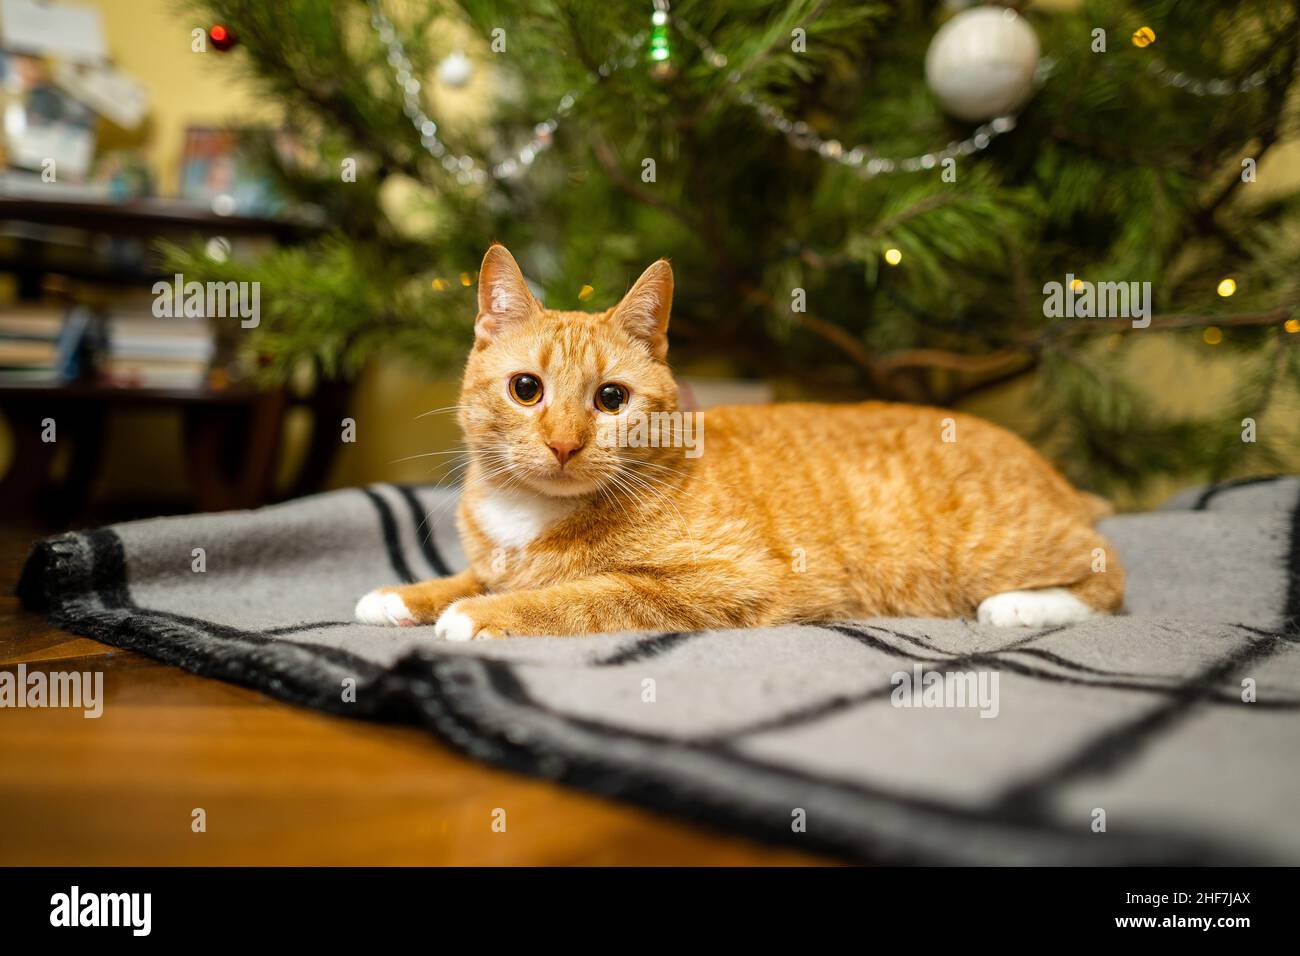 Le chat de gingembre heureux est assis sur un tissu écossais sous un sapin de Noël avec des décorations festives le réveillon du nouvel an.Un animal de compagnie aime sous le pin à la maison sur la planche de lit à l'intérieur Banque D'Images